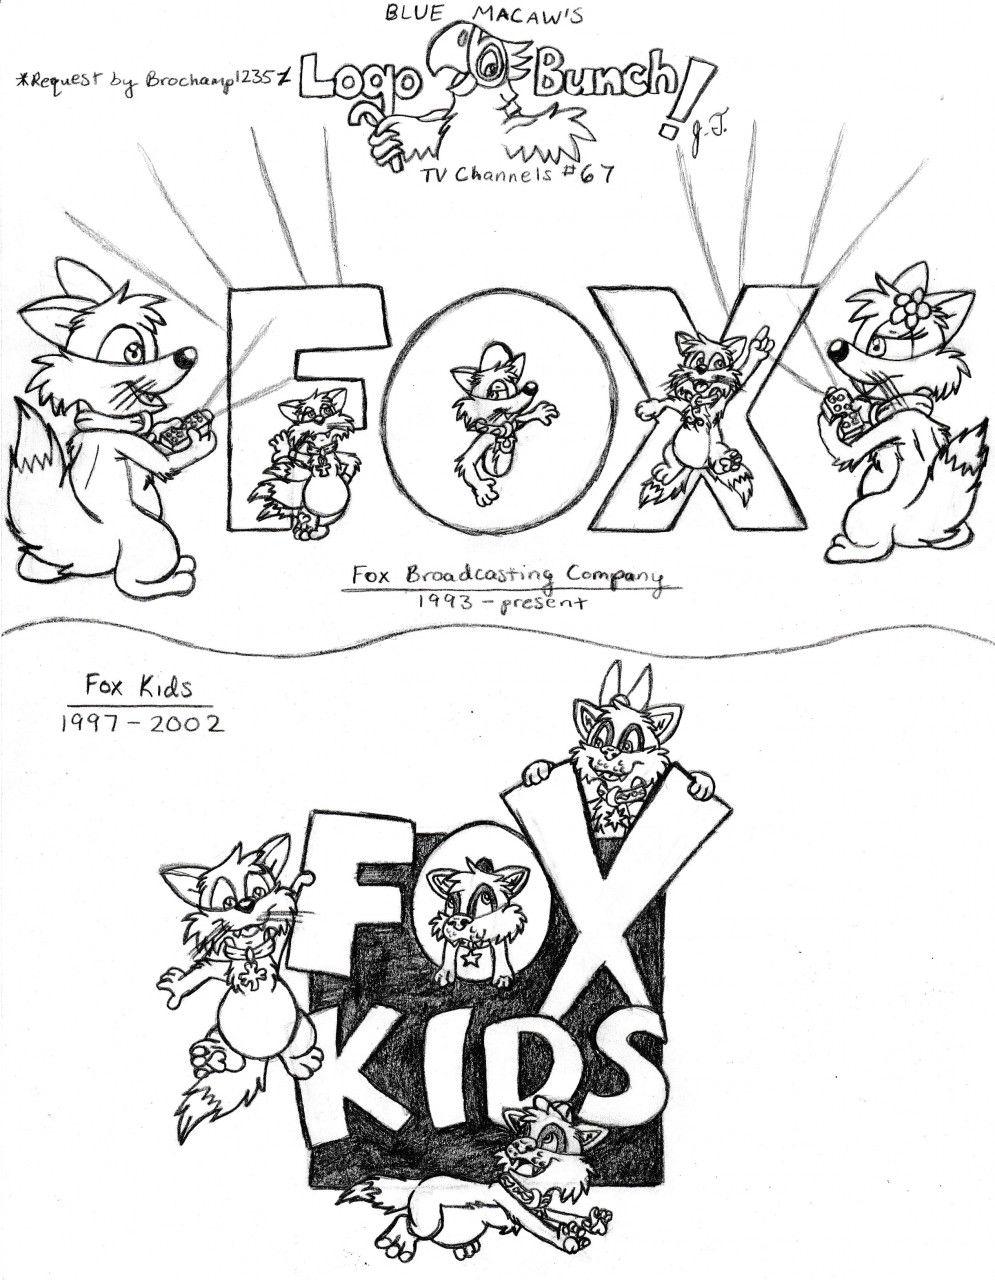 Fox Kids Logo - Blue Macaw's Logo Bunch